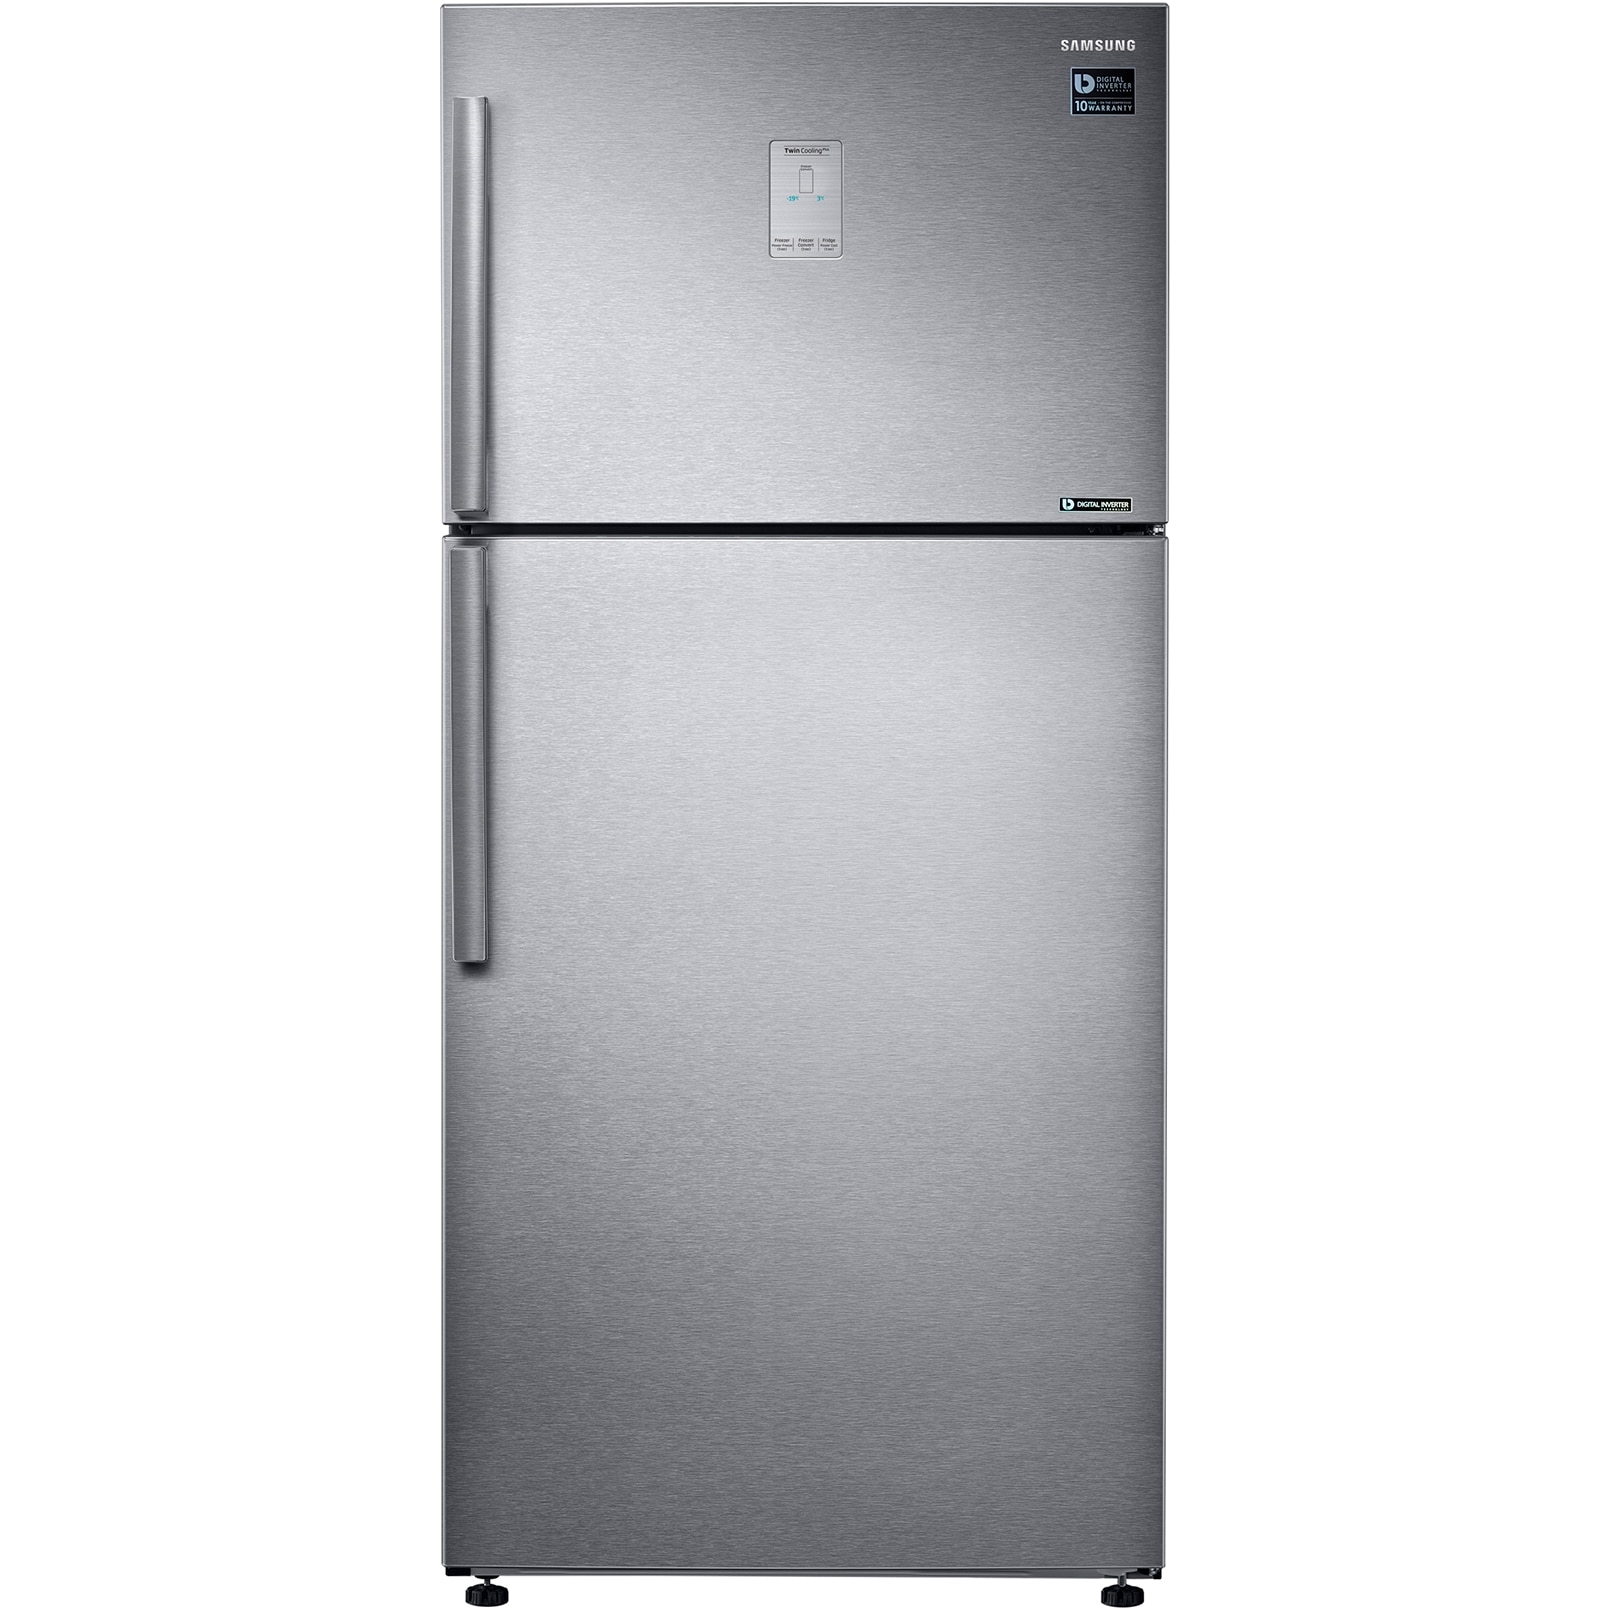 Холодильник eigen stark rf31. Холодильник Samsung RT-53 k6340sl. Холодильник Samsung rt53k6330sl. Samsung rt46k6360sl. Samsung rt35k5440s8/WT.